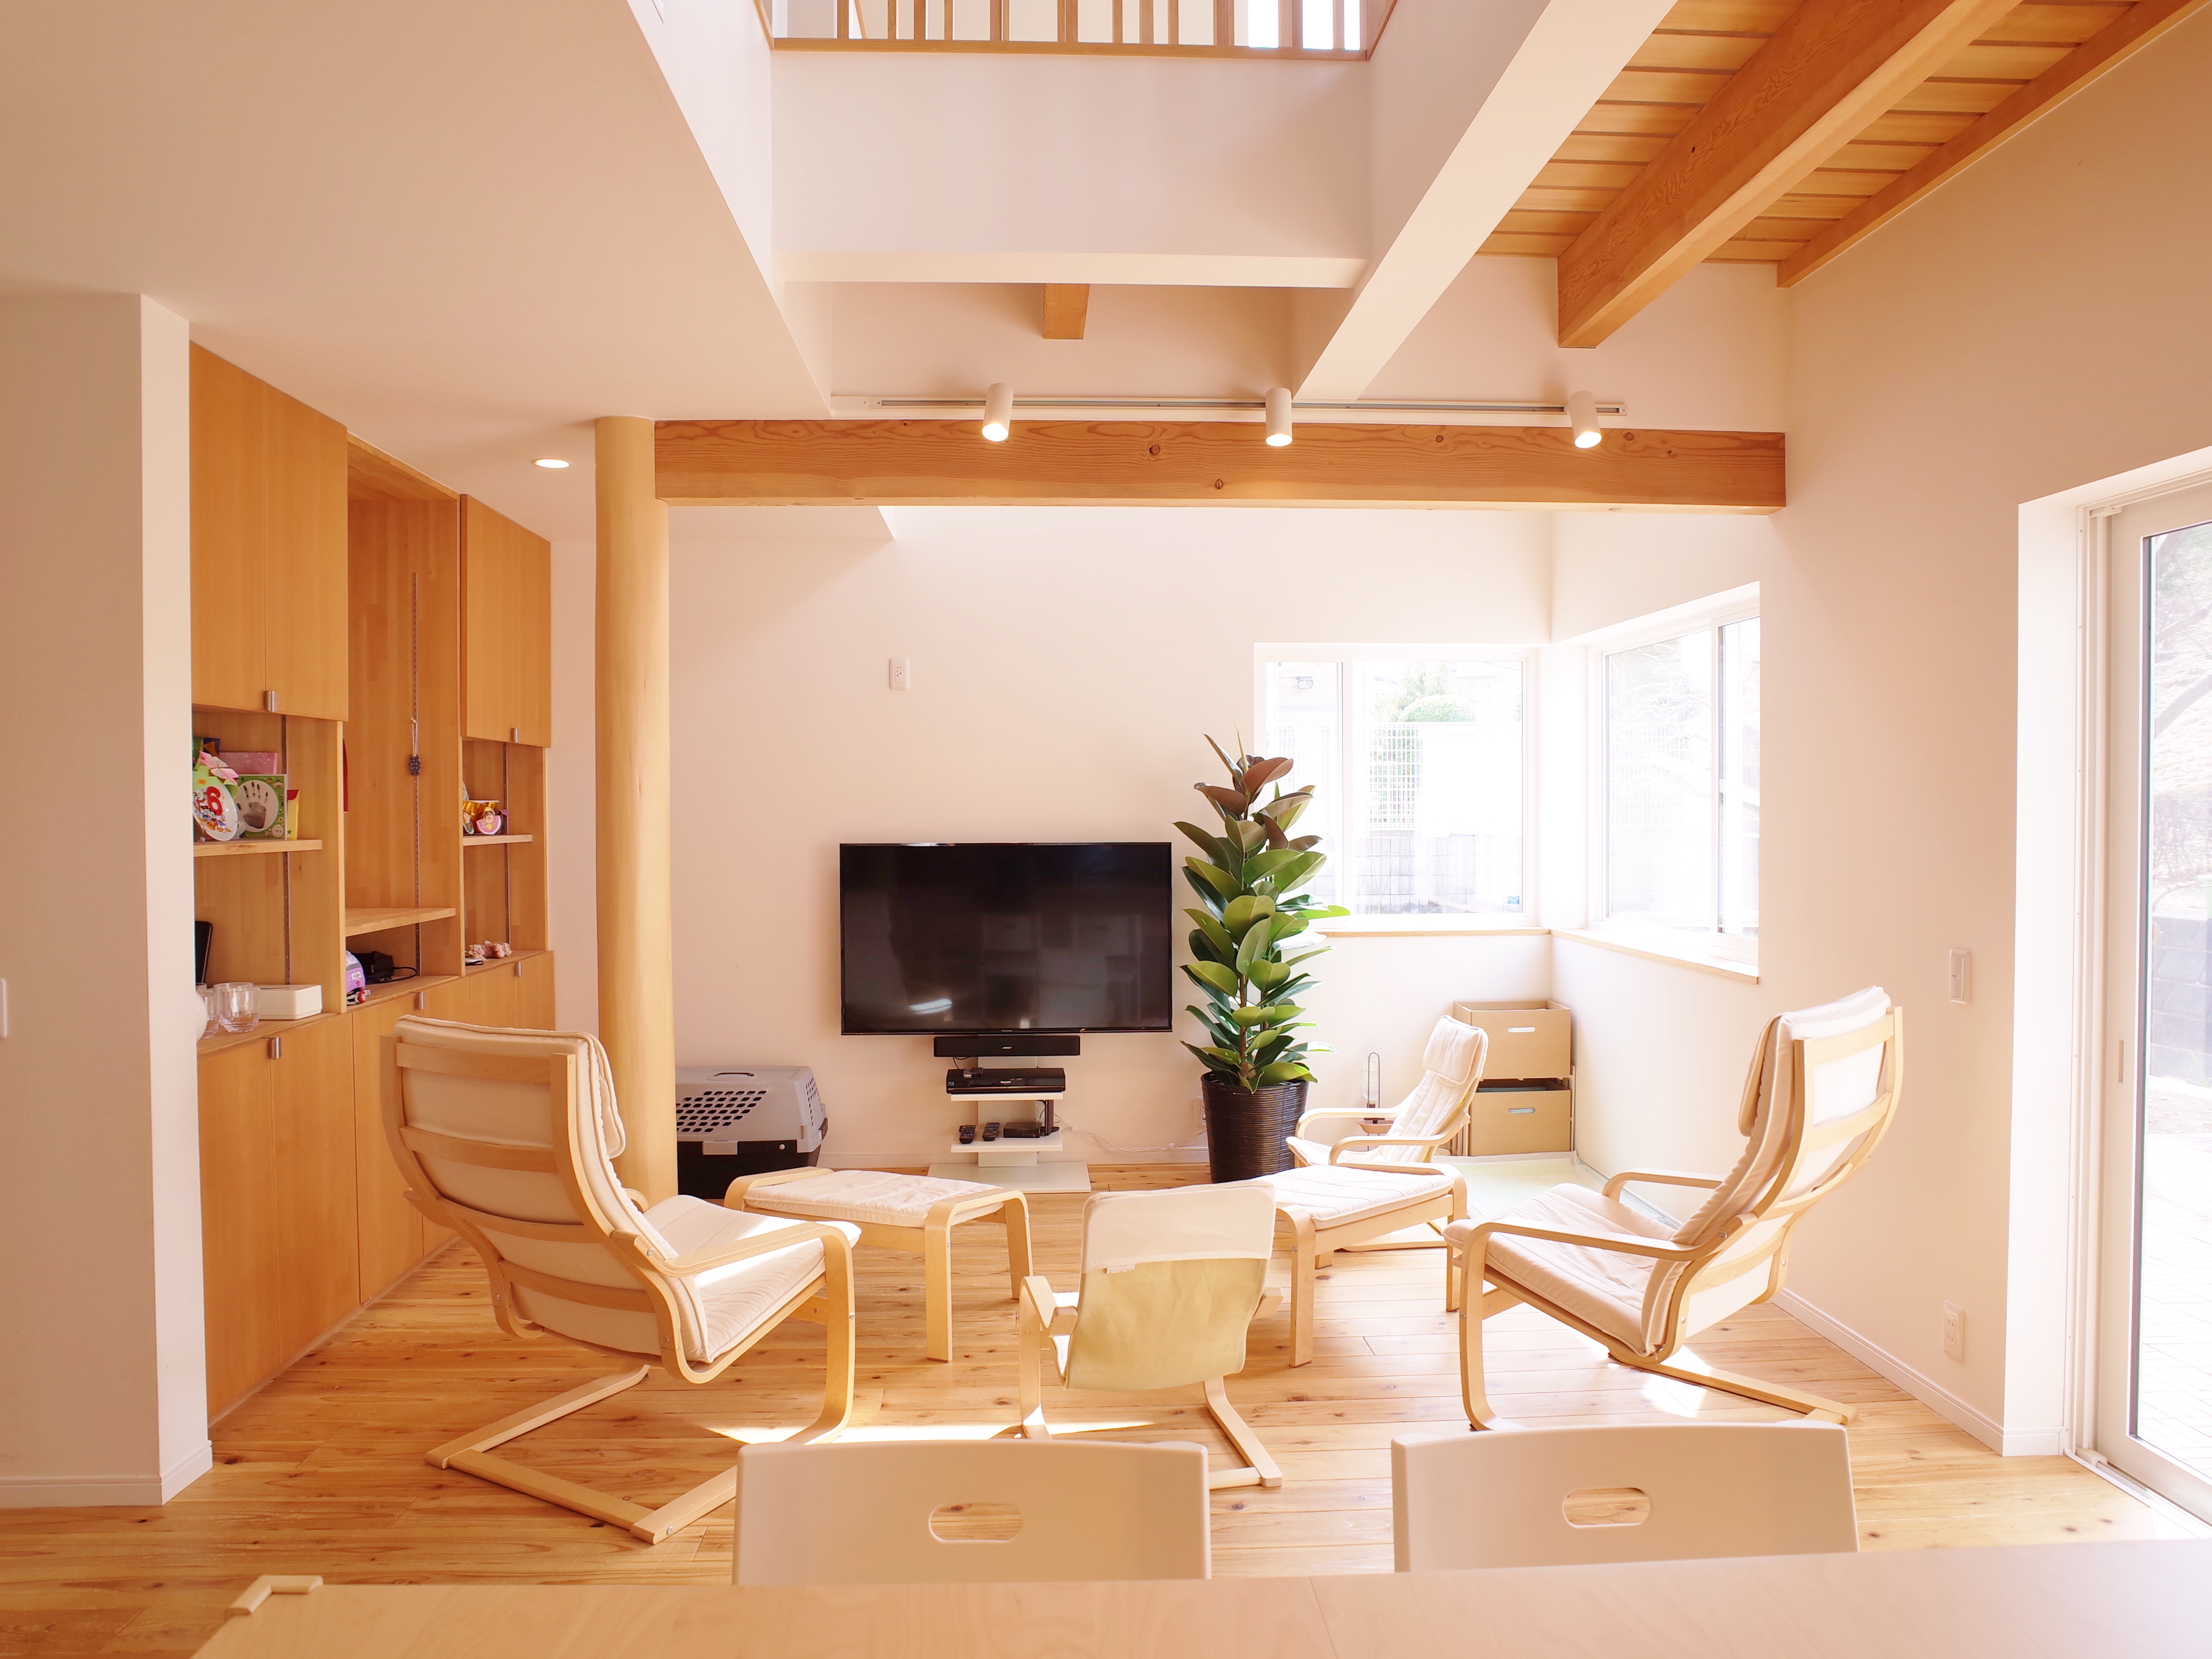 冬暖かく、夏涼しくを目指したフルリノベーションの家＠横浜　の訪問会を行います。